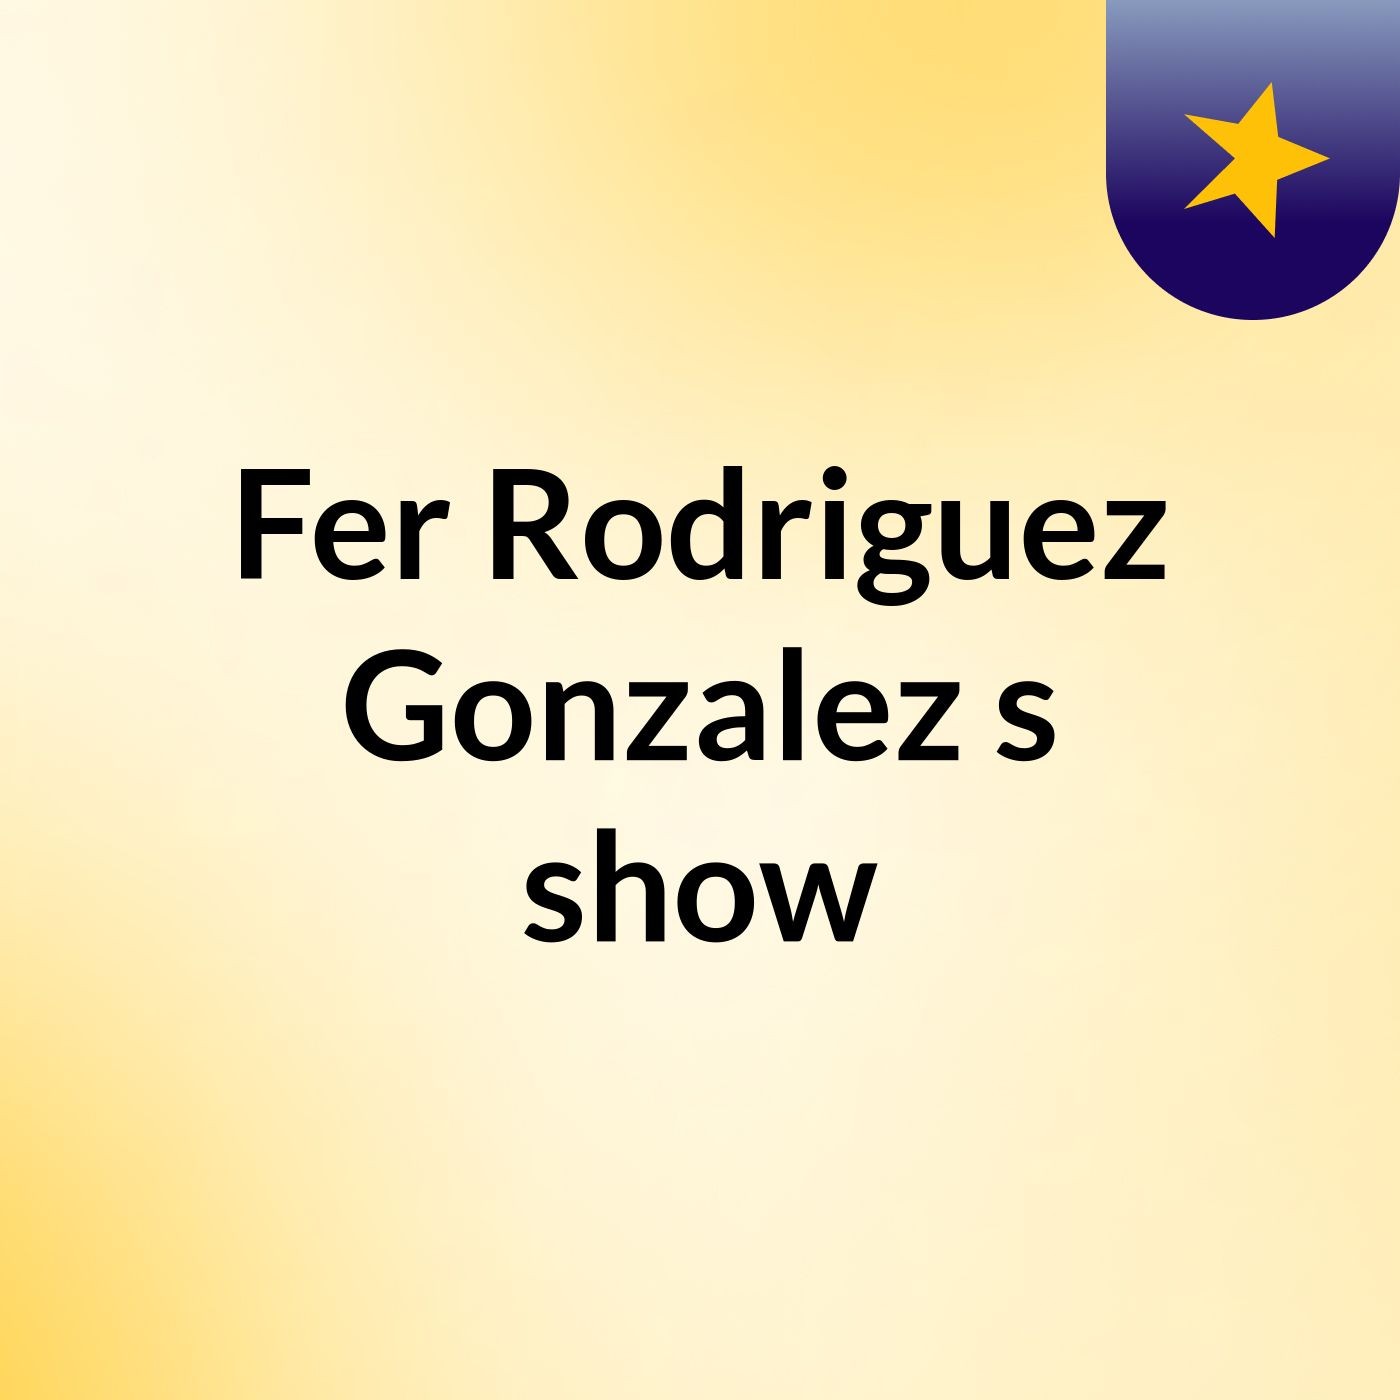 Fer Rodriguez Gonzalez's show